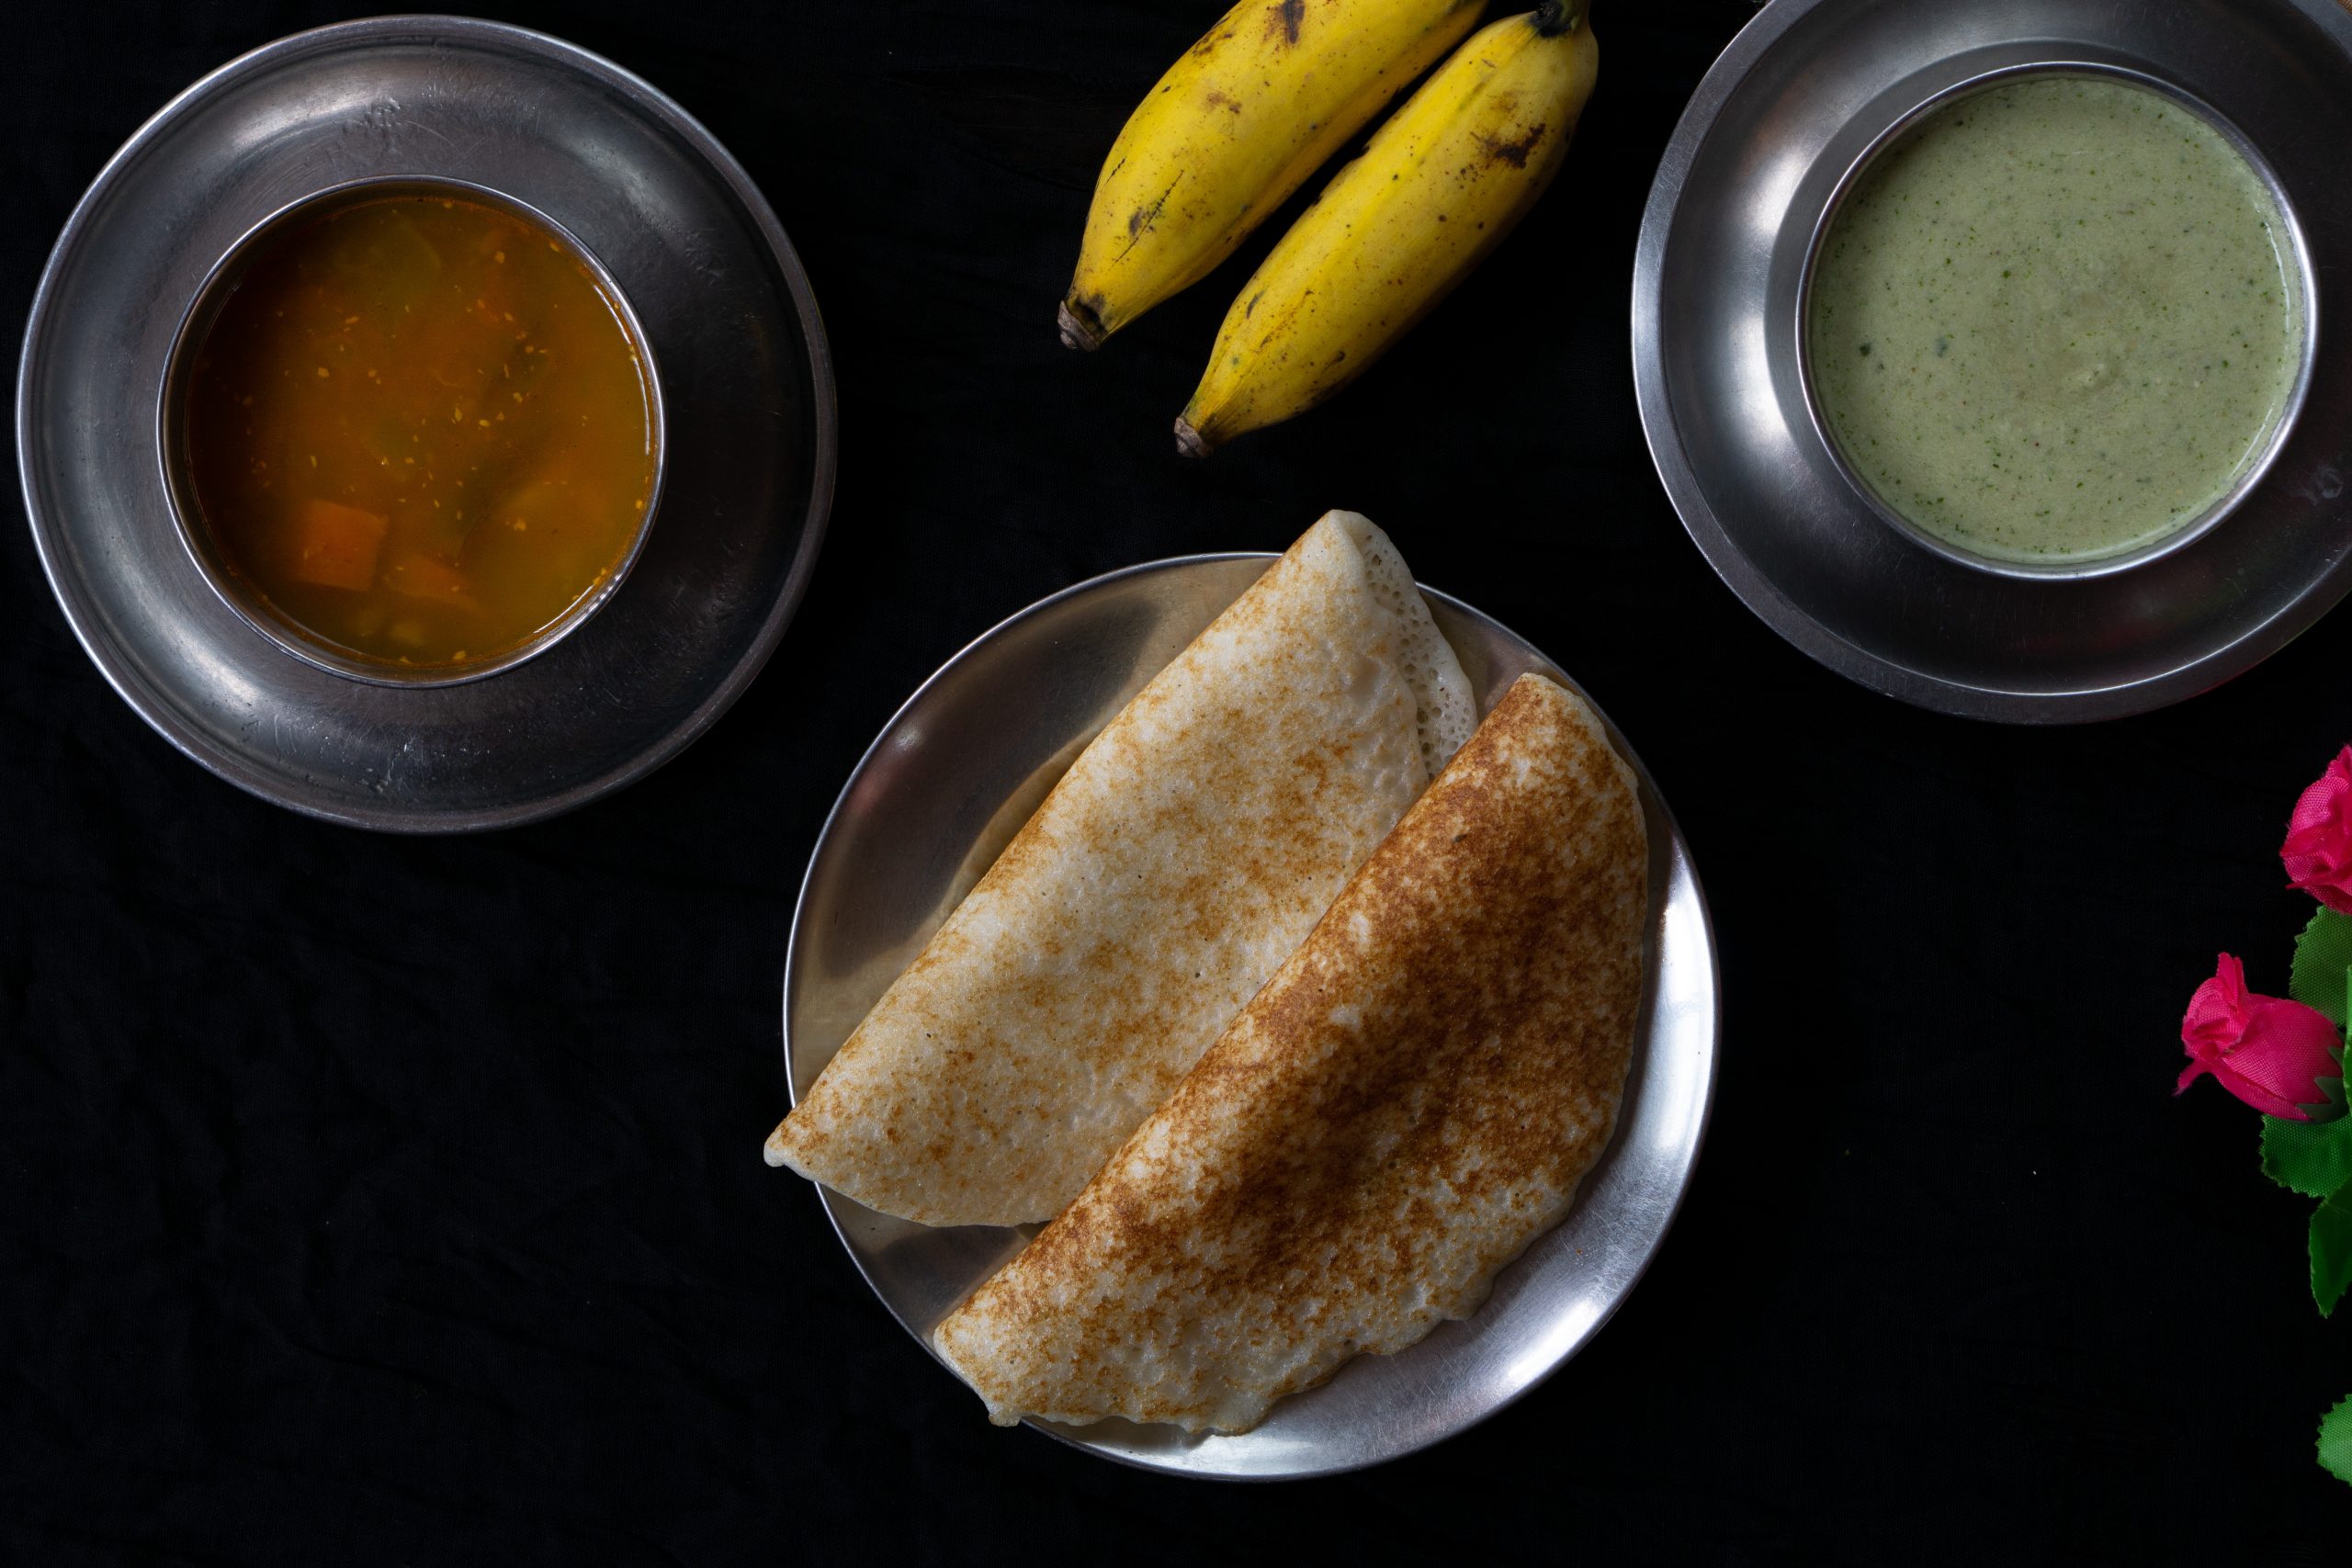 dosa with sambar, chutney and bananas